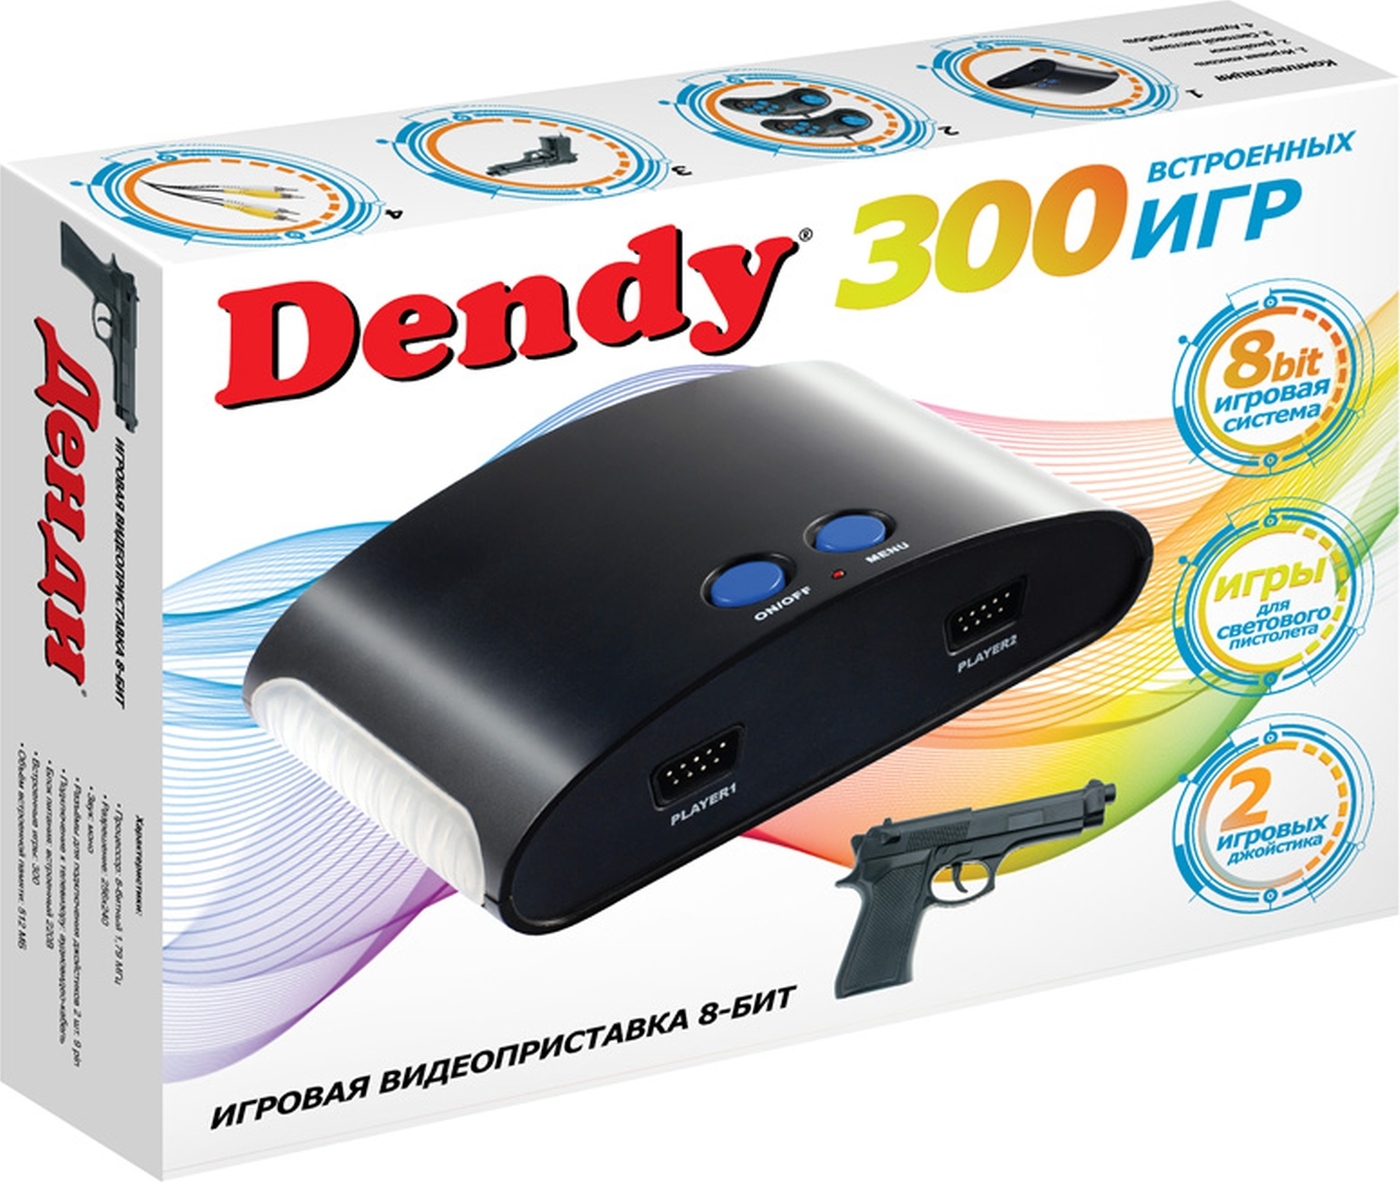 Приставка 300 игр. Dendy 300 игр. Приставку Денди в 300 встроенных игр. Денди Drive 300 игр диск.